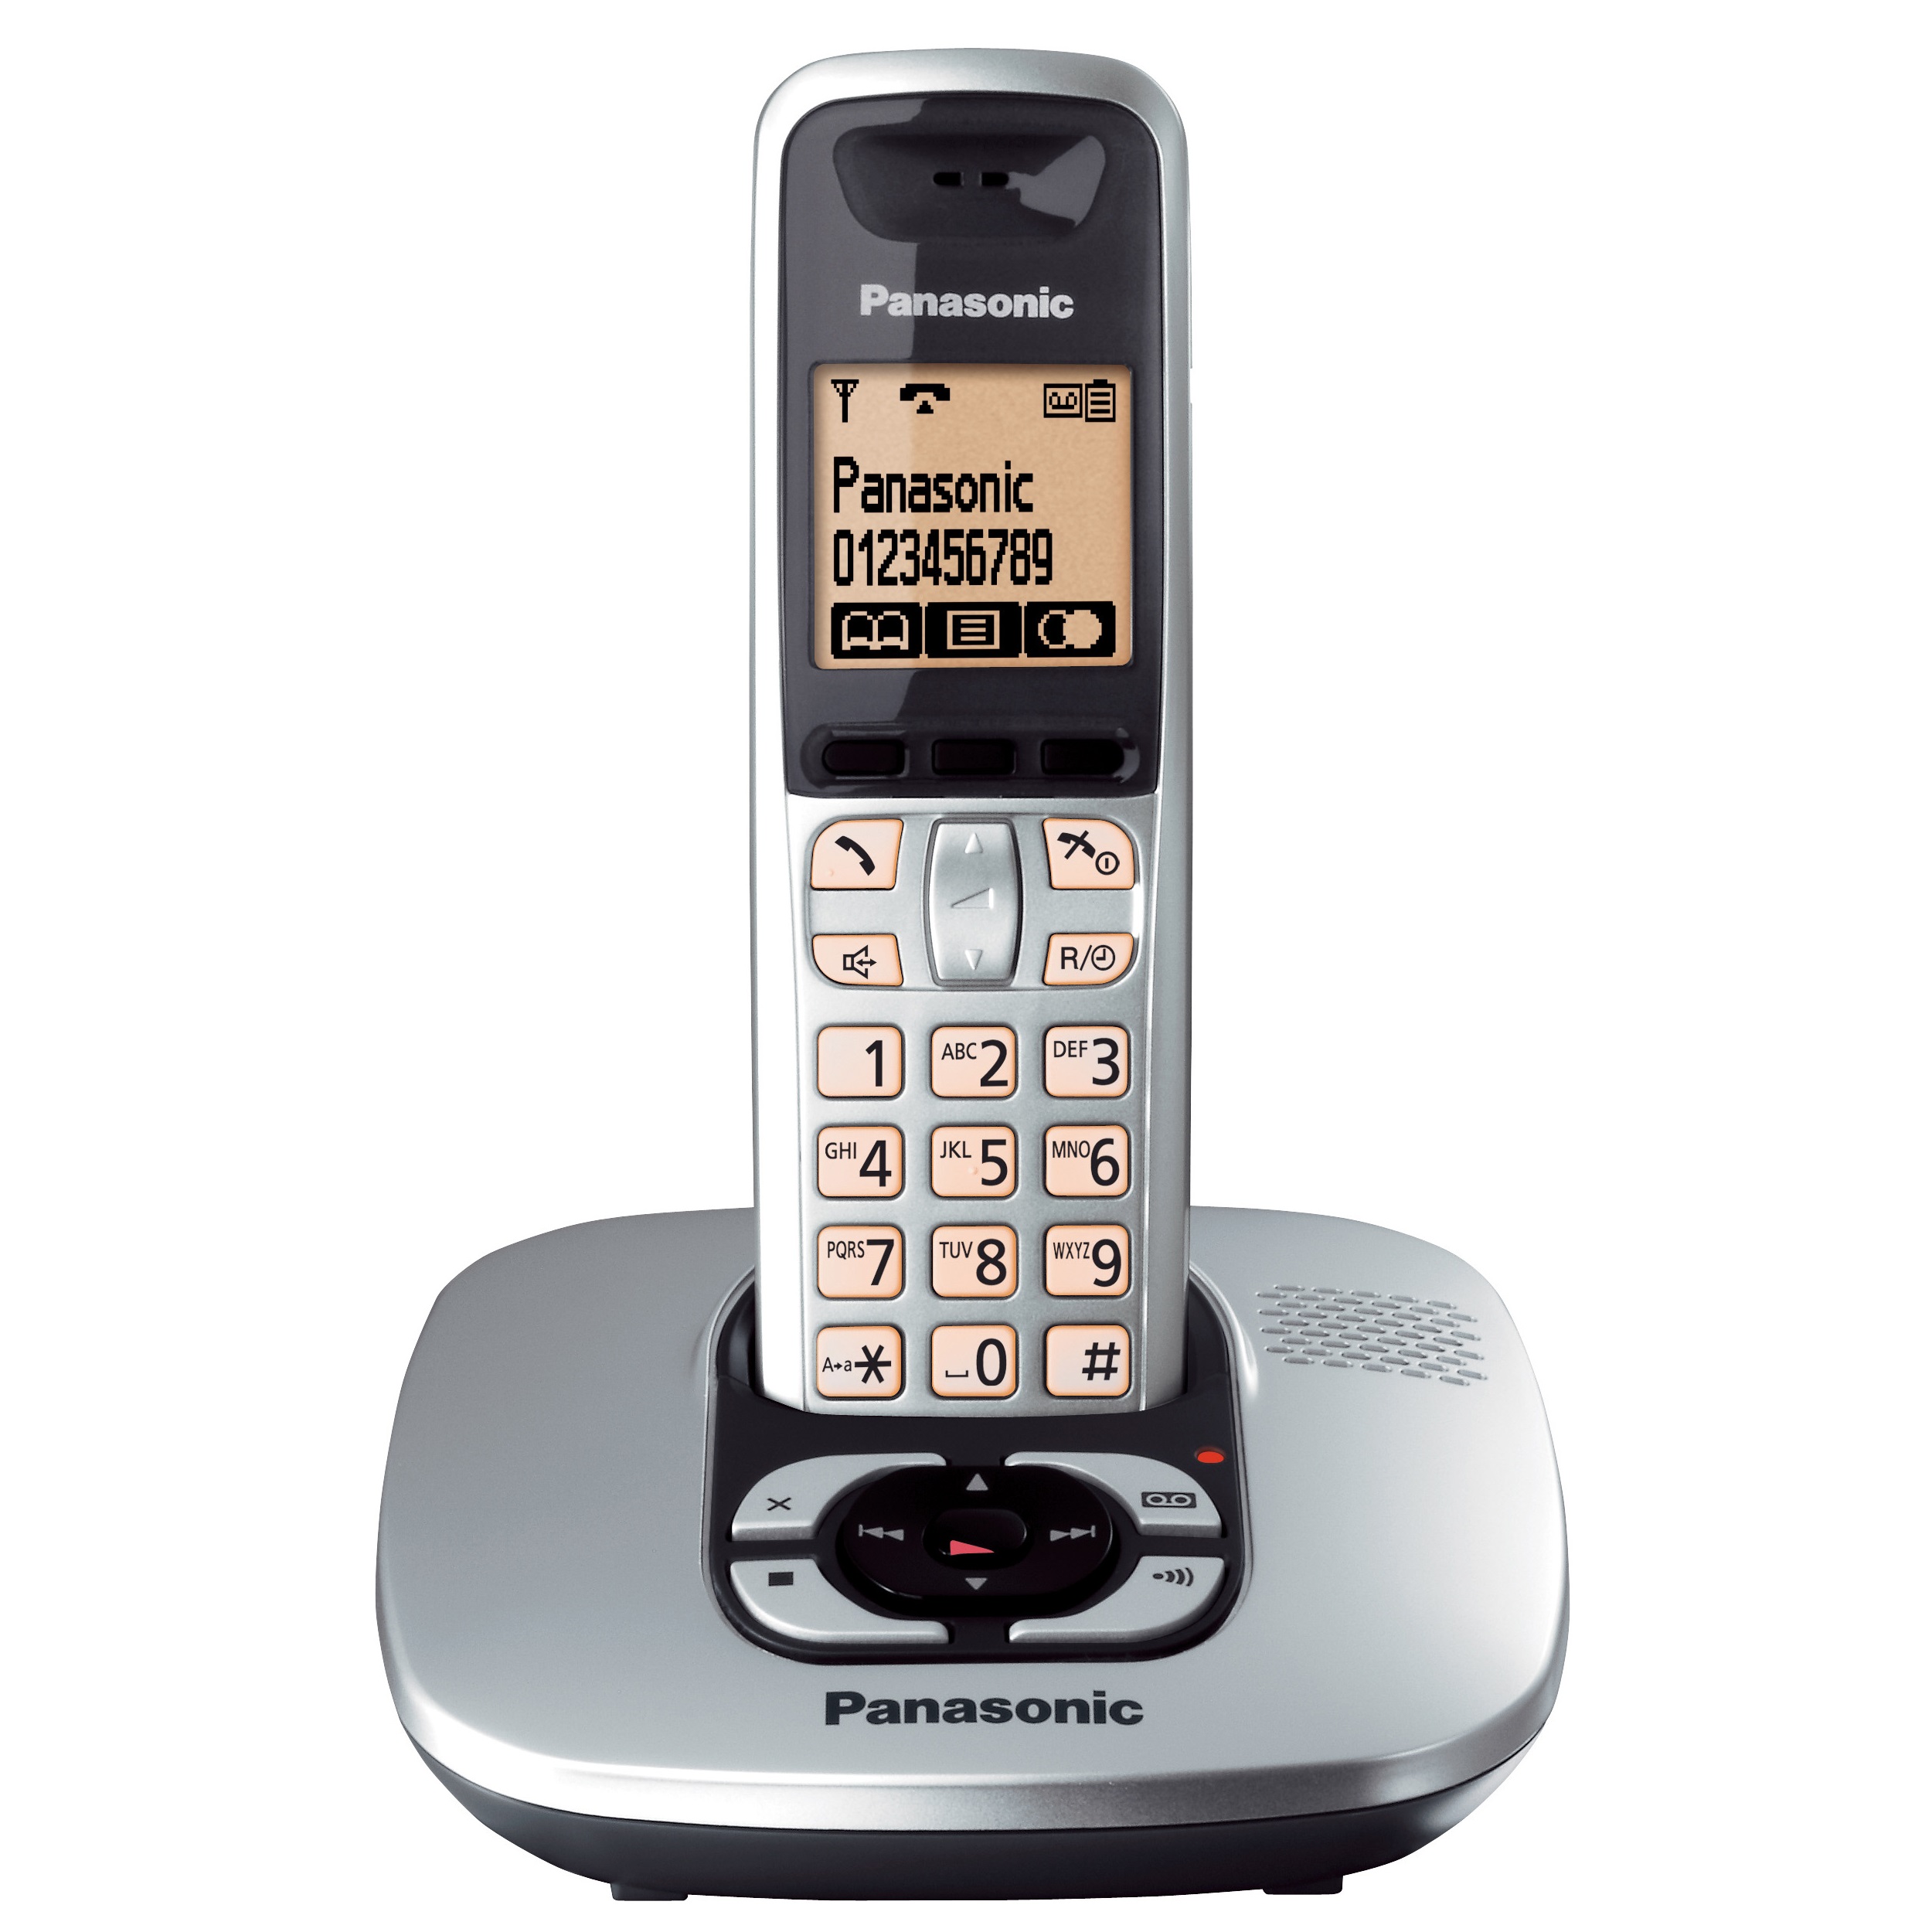 نکته خرید - قیمت روز تلفن پاناسونیک مدل KX-TG6421 خرید